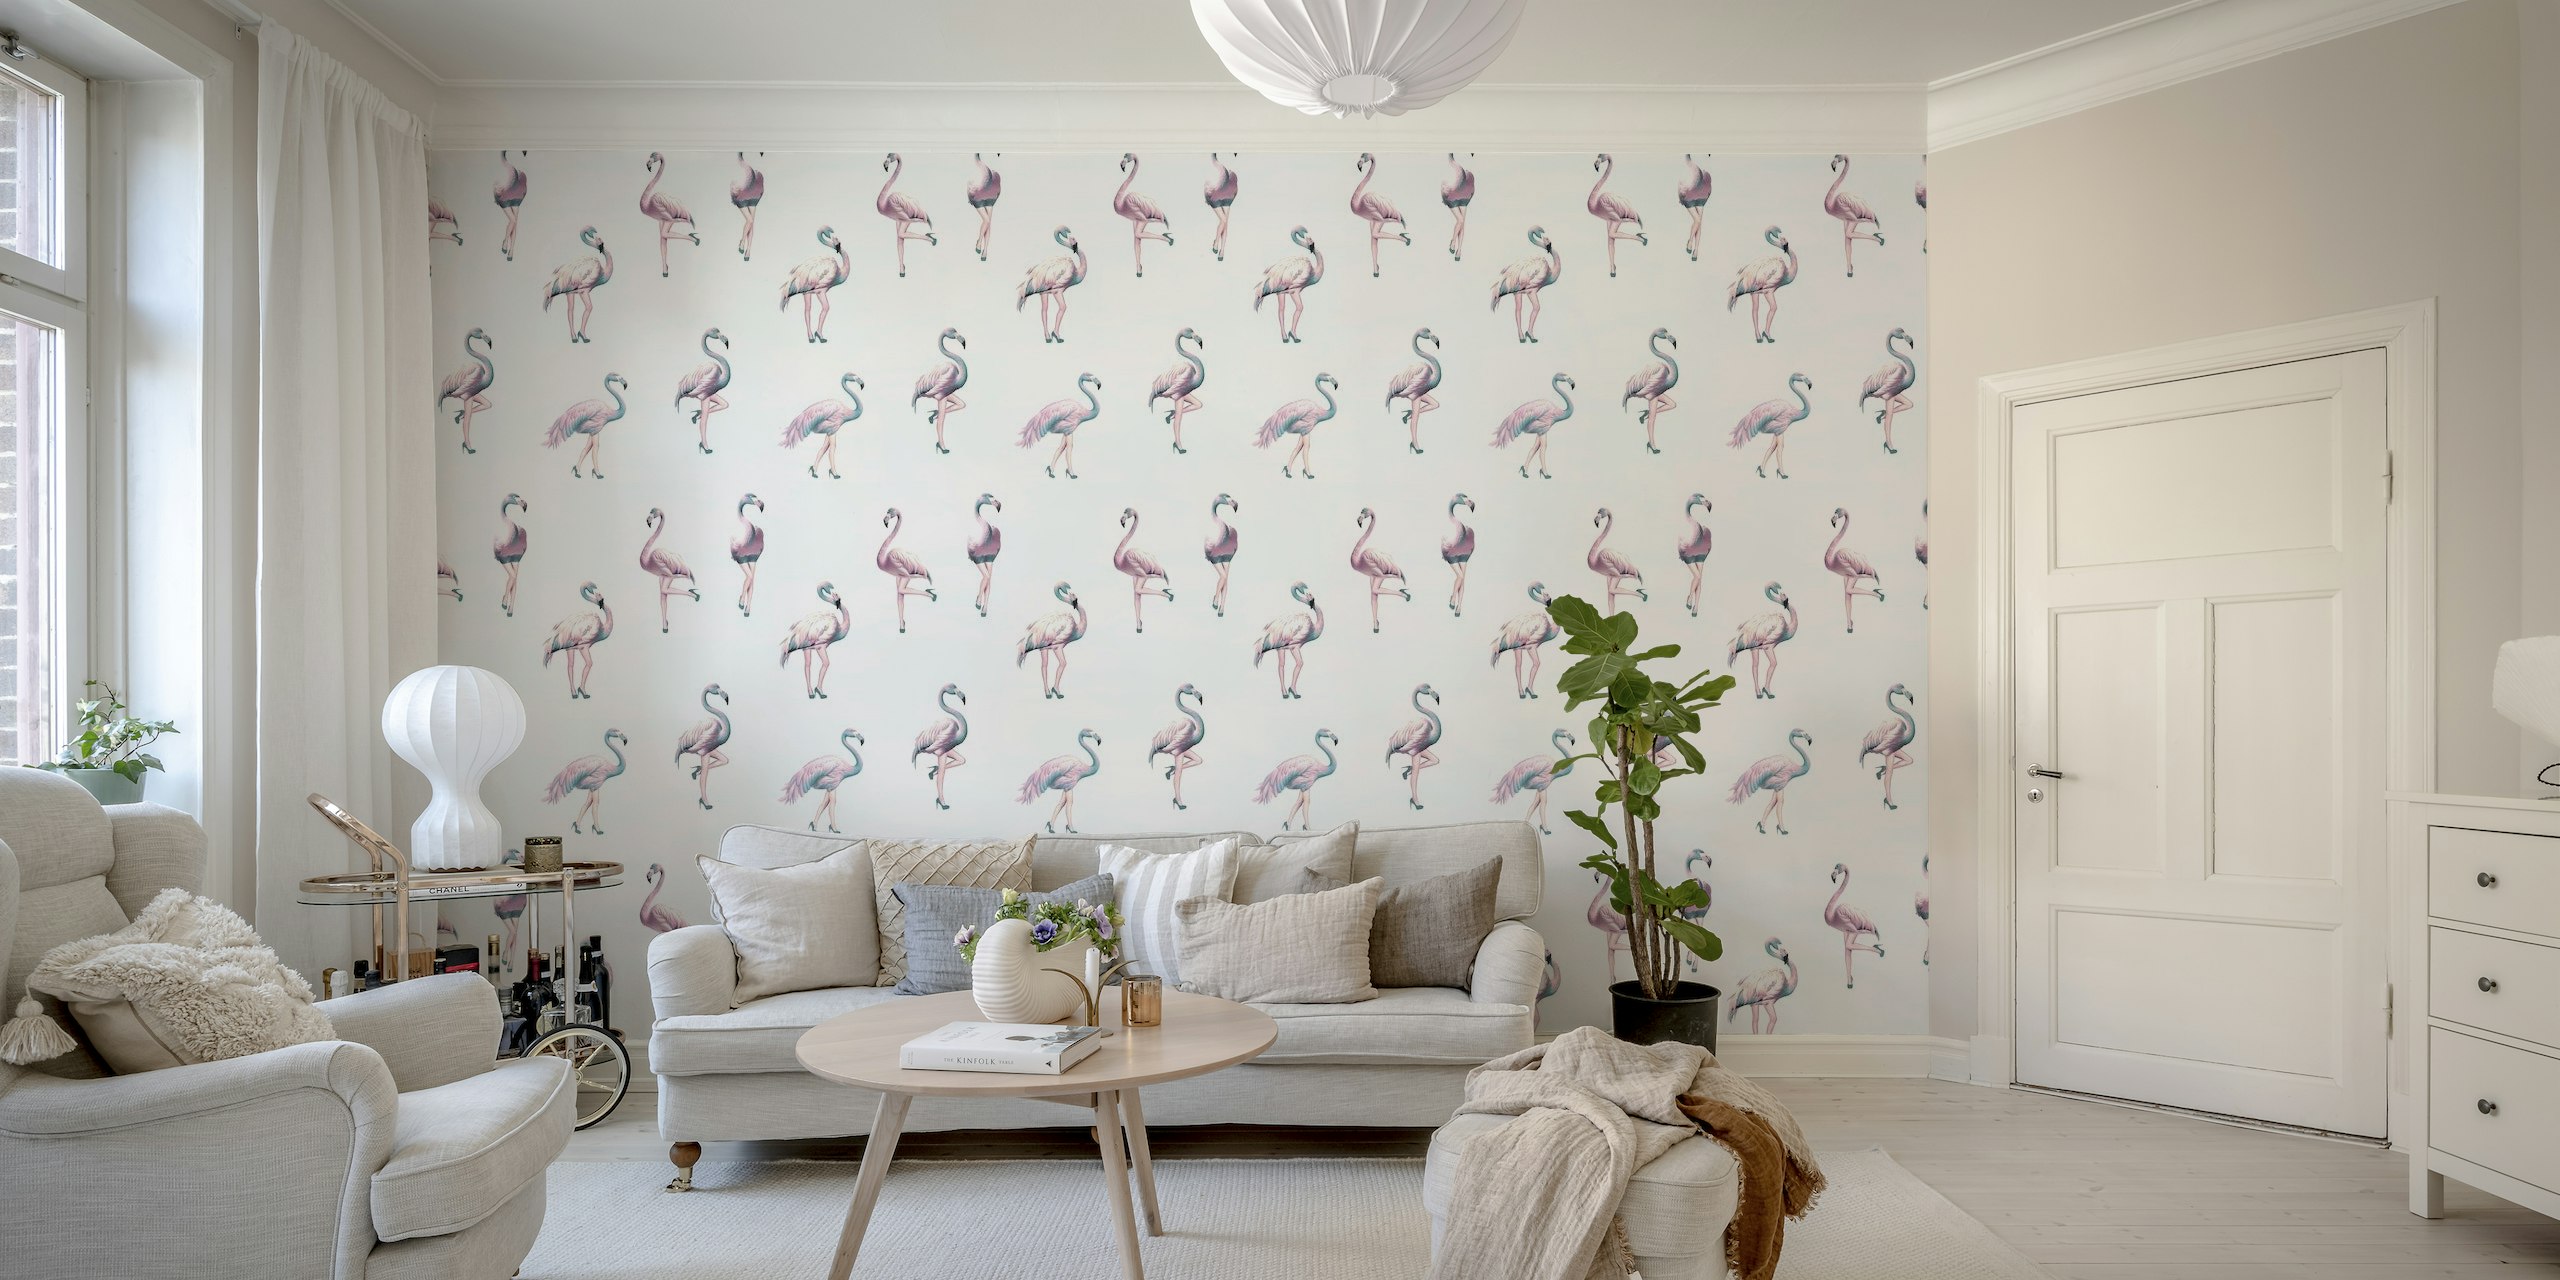 Stijlvolle muurschildering met flamingosilhouetten in de kleuren aquablauw, roze en groenblauw.